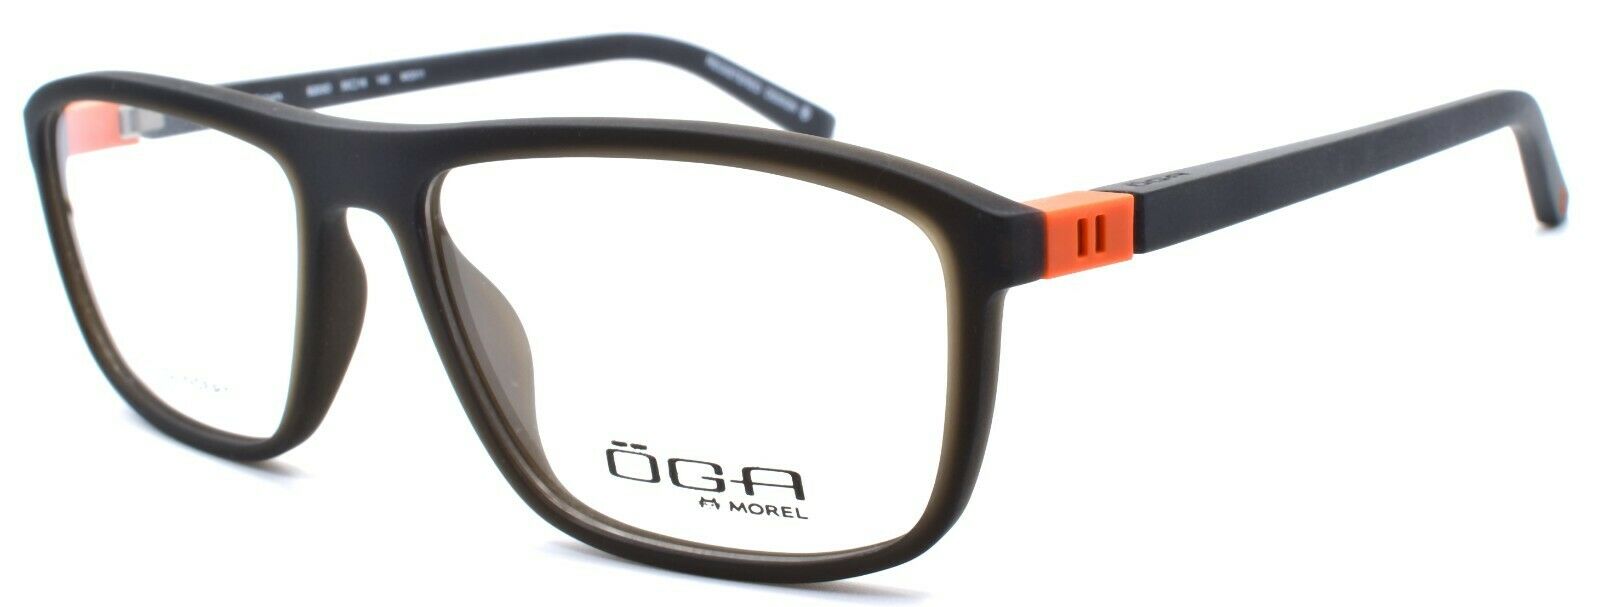 1-OGA by Morel 8203O MO011 Men's Eyeglasses Frames 55-16-140 Dark Grey-3604770897630-IKSpecs